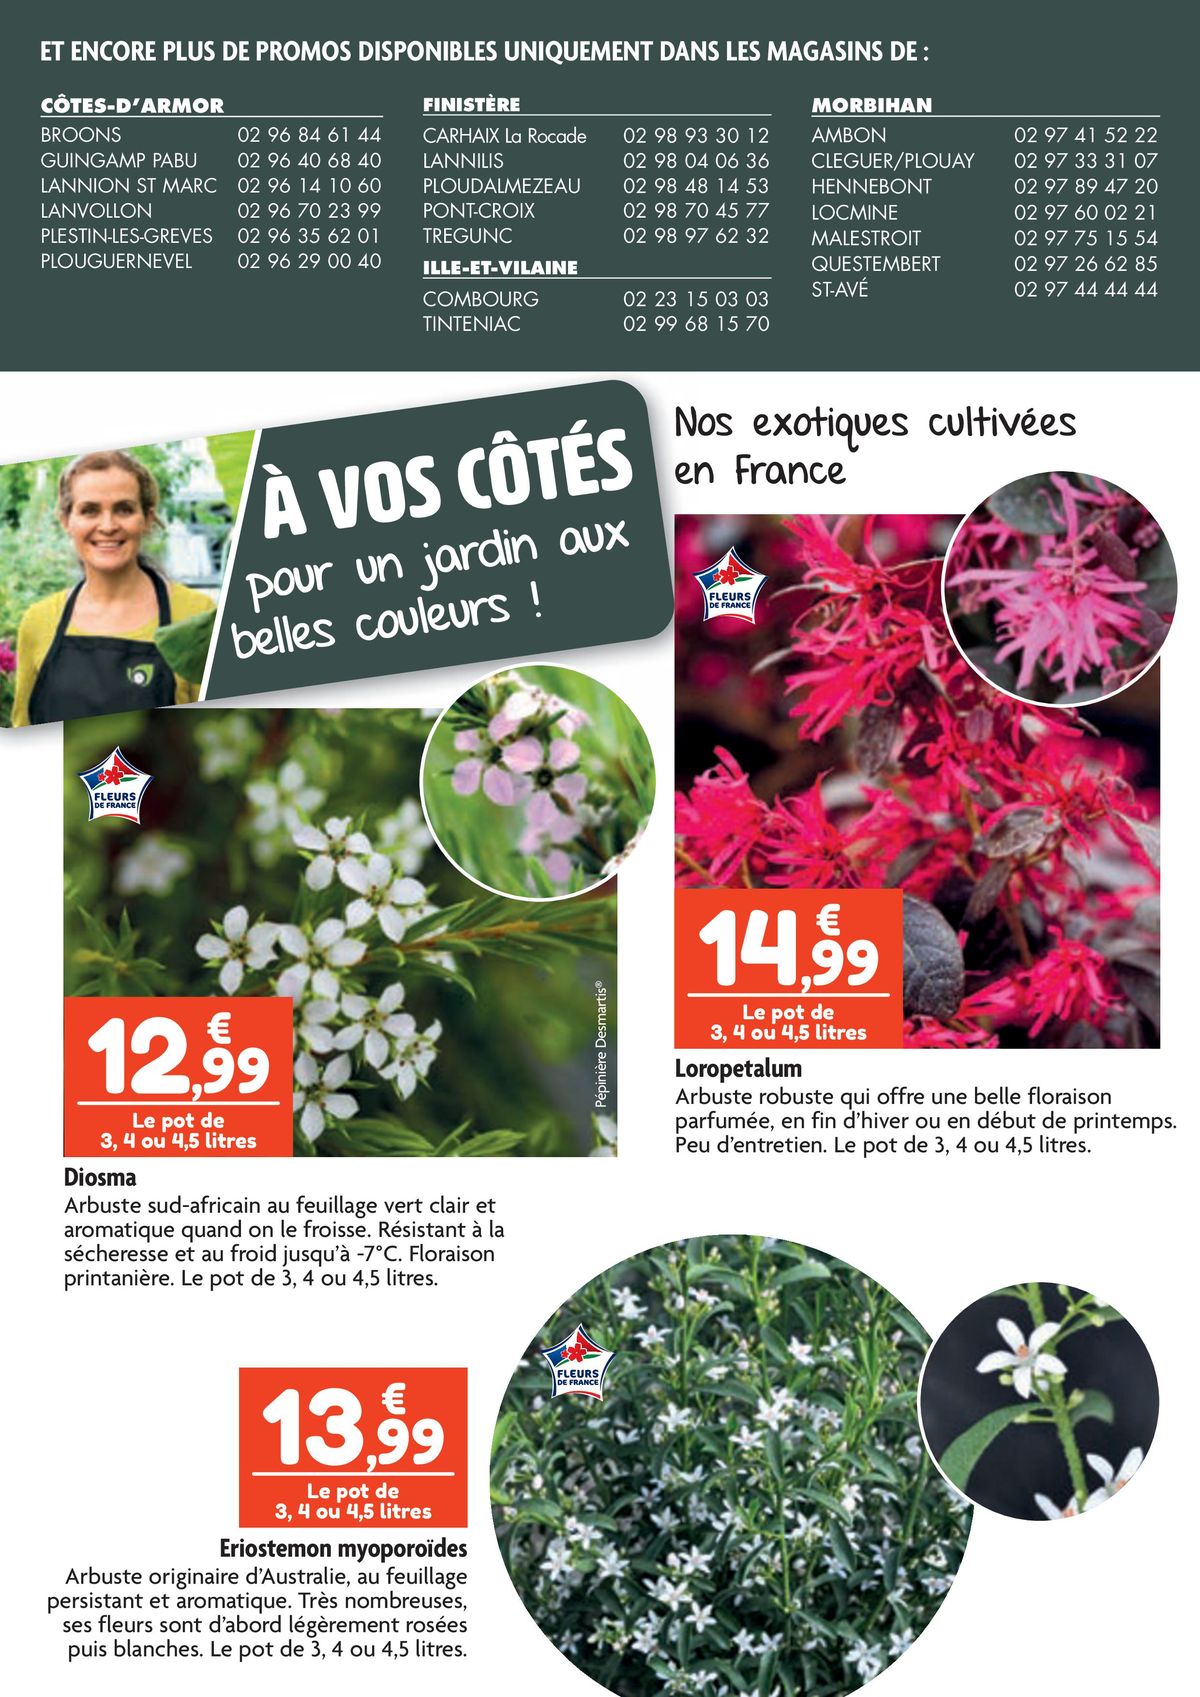 Catalogue À vos côtés pour un jardin aux belles couleurs !, page 00001